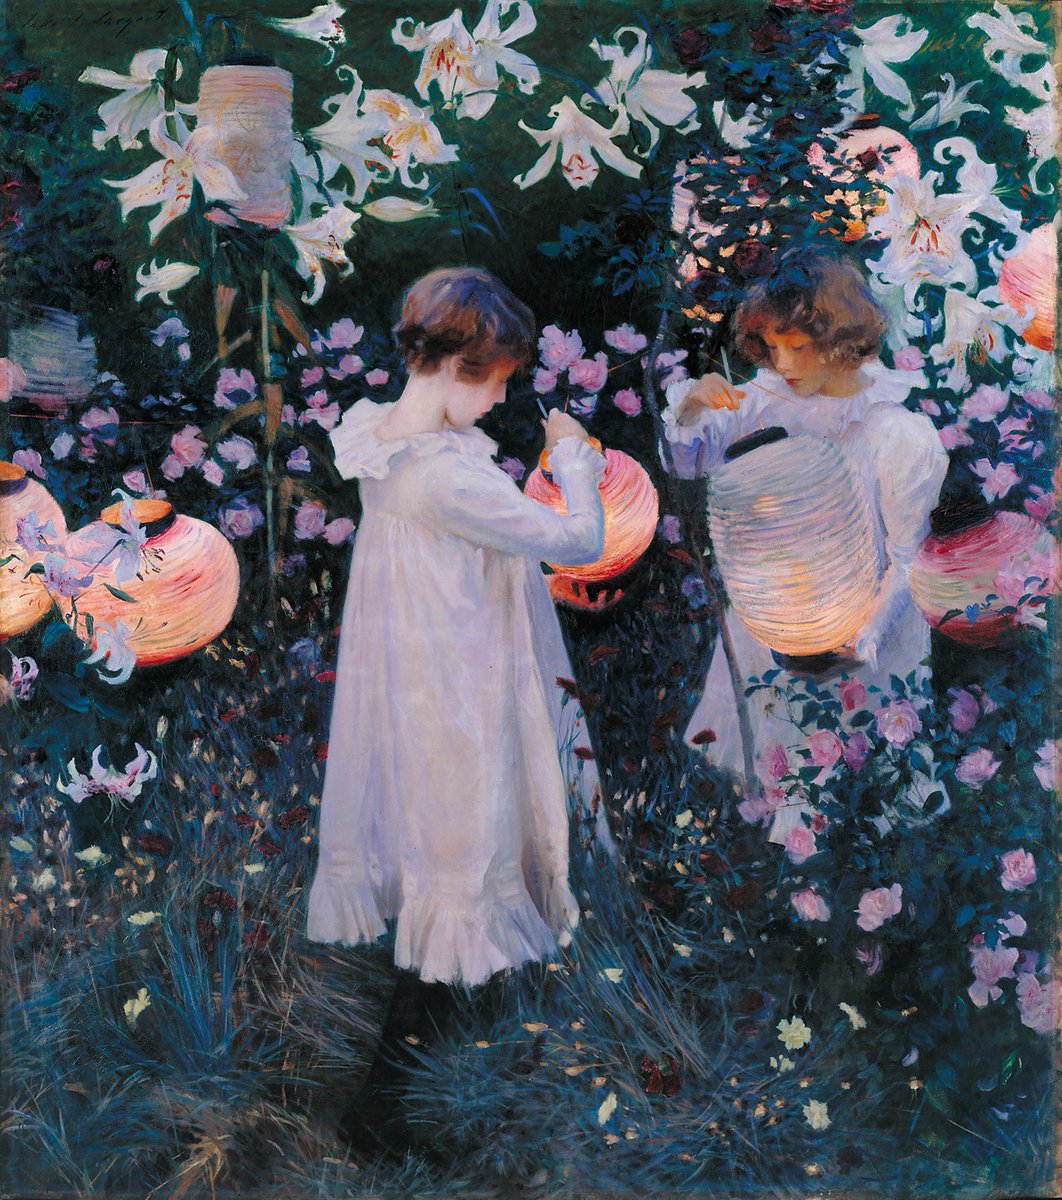 John Singer Sargent - Carnation, Lily, Lily, Rose, 1885-86